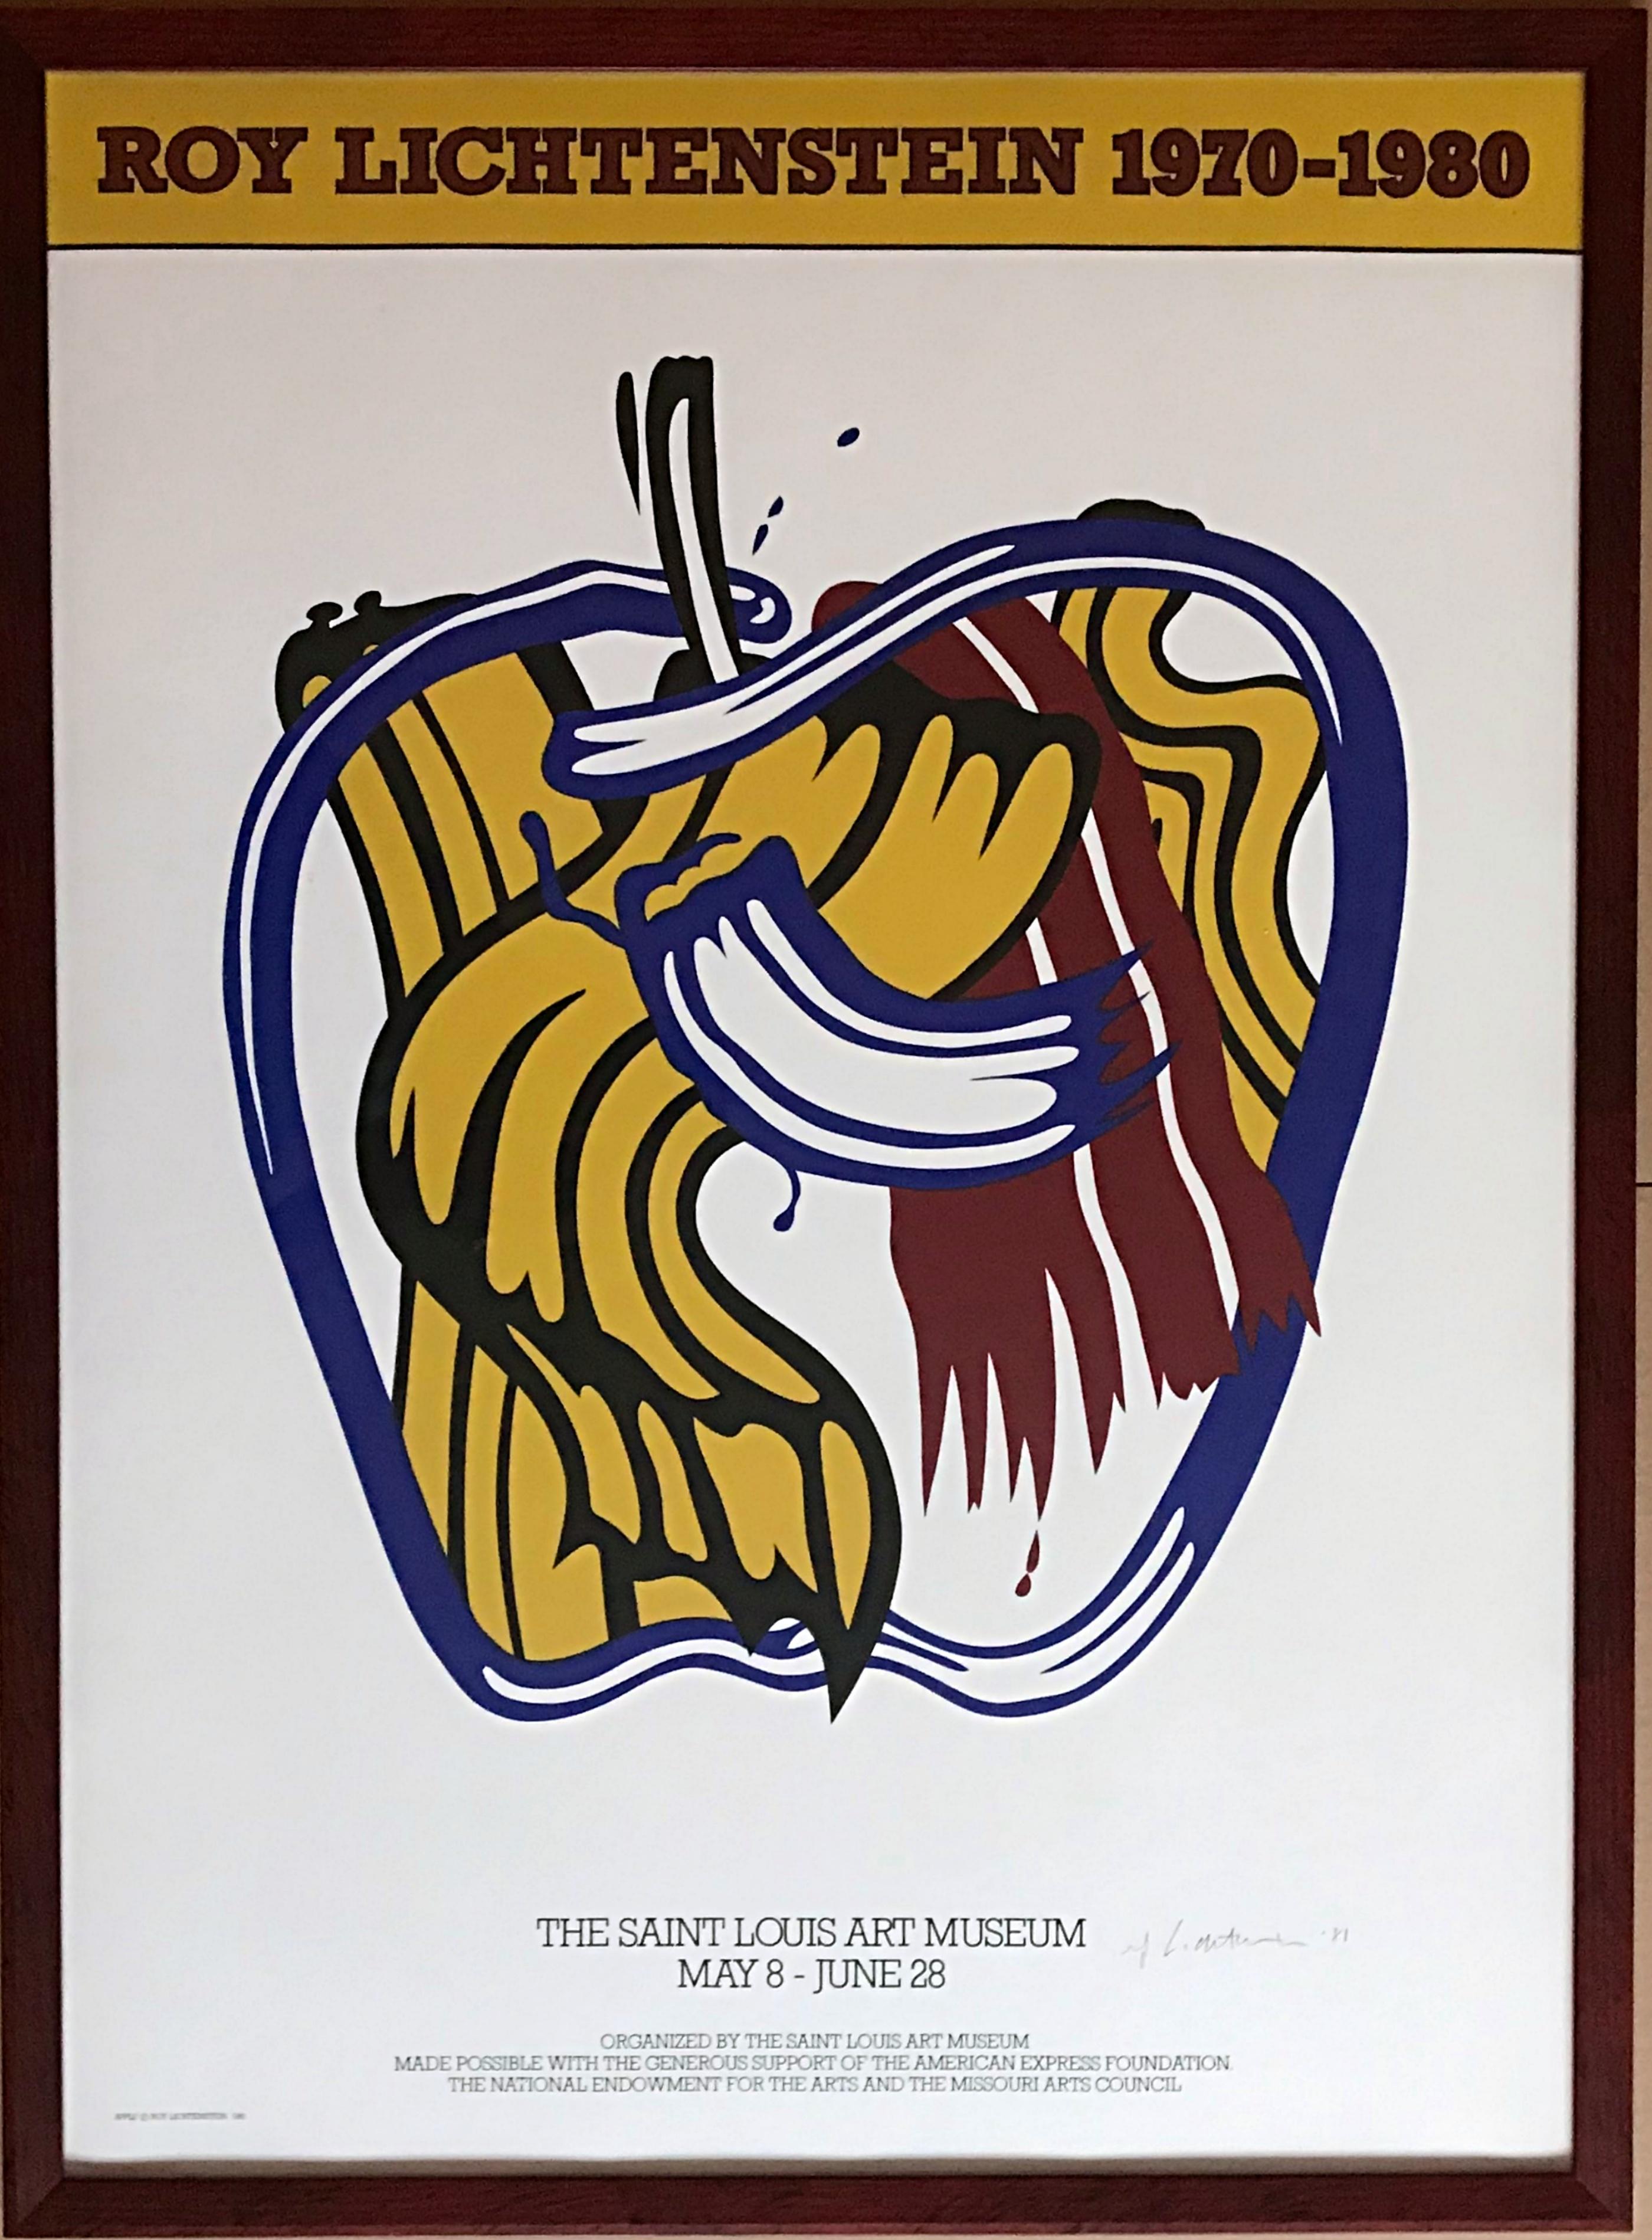 Affiche du musée d'art de Saint Louis (signée et datée à la main par Roy Lichtenstein)